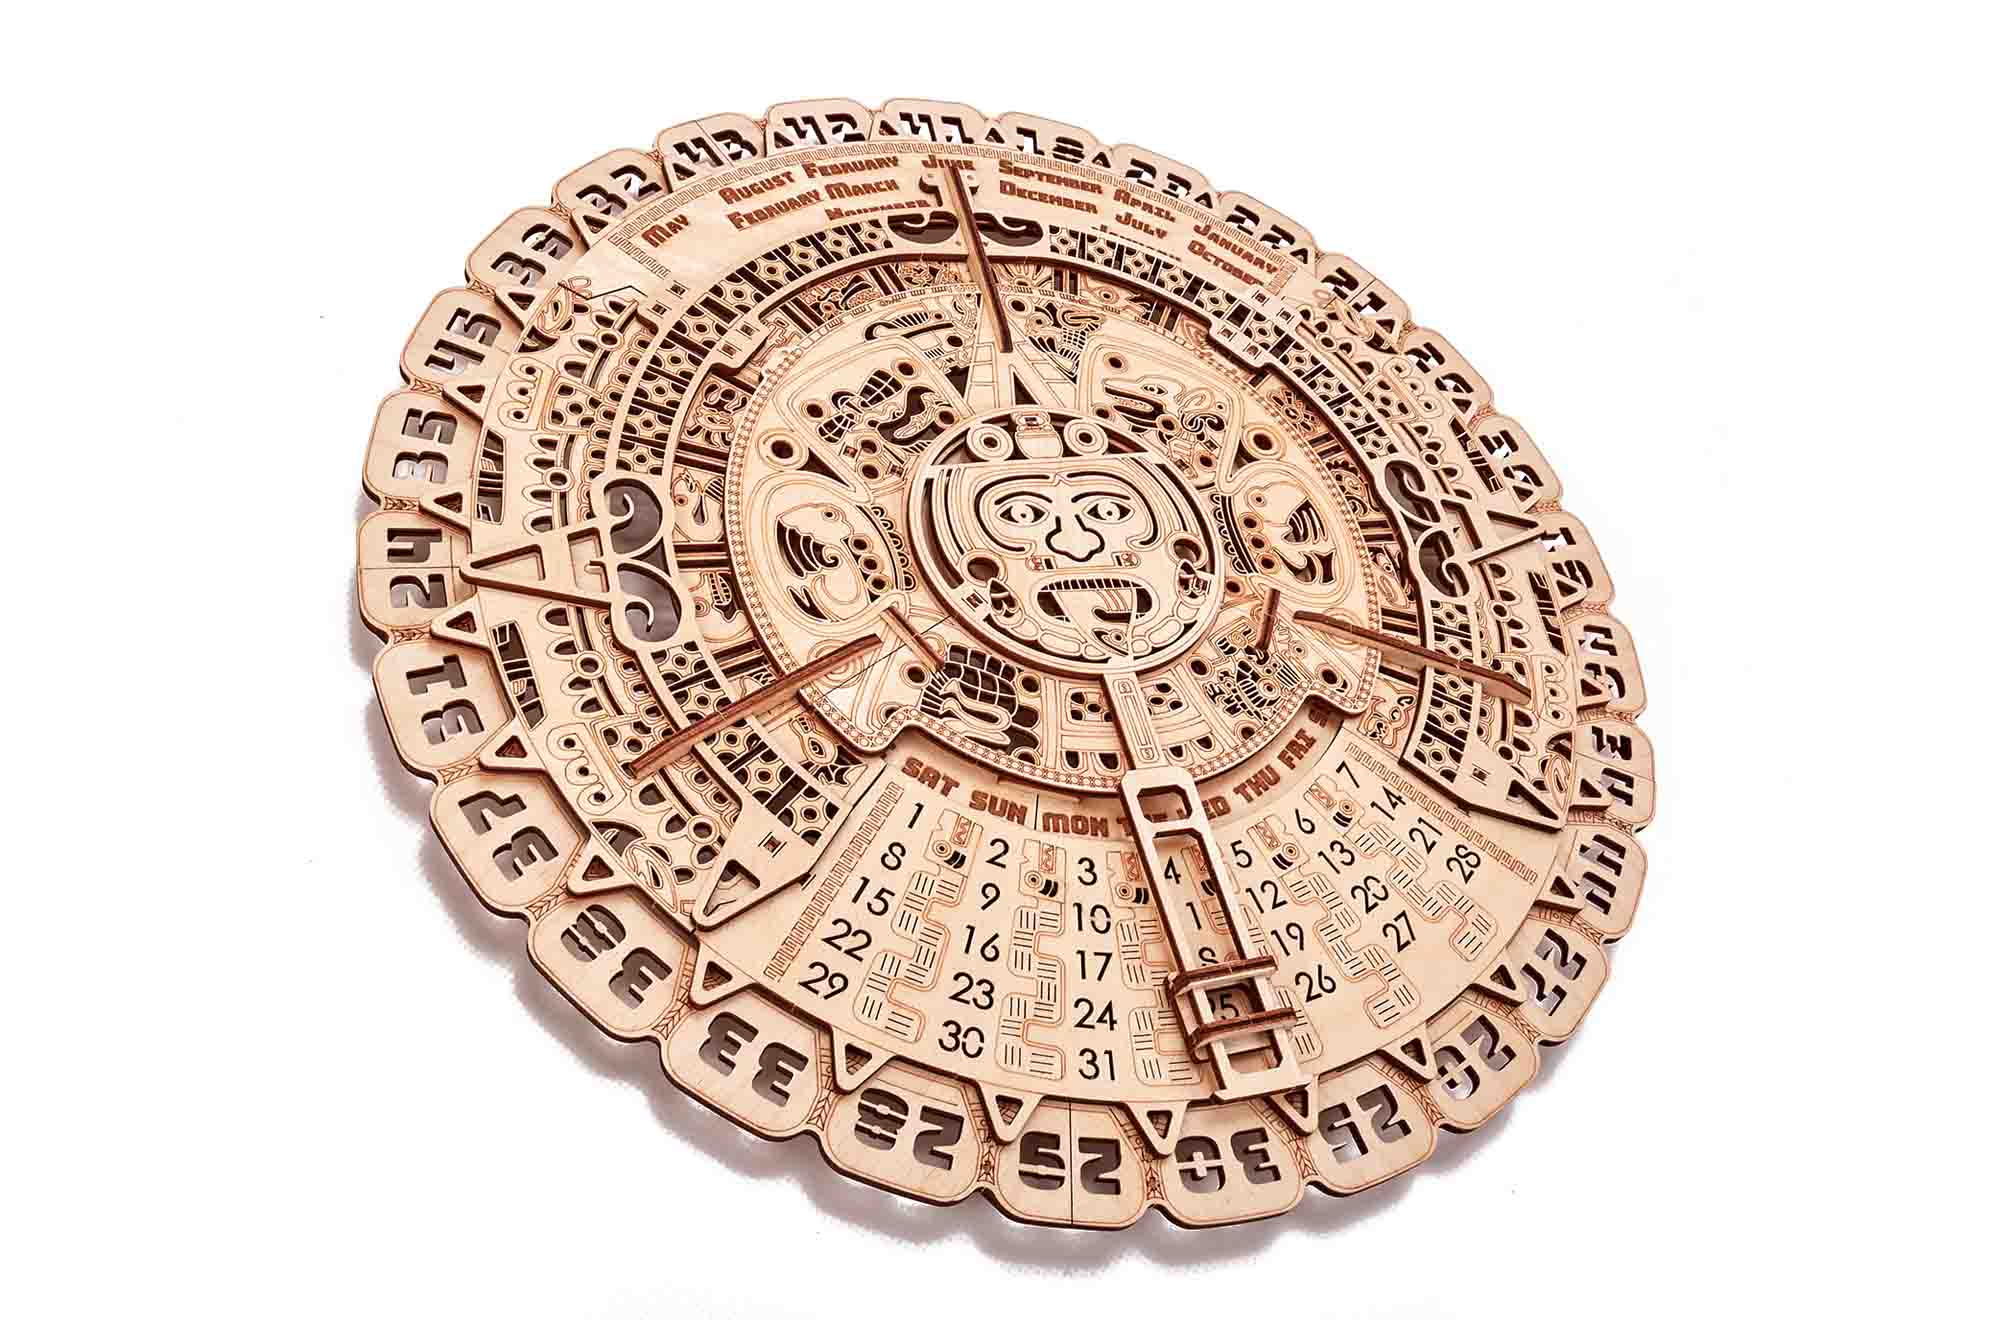 Календарь майя почему так назван. Хааб – Солнечный календарь Майя. Вуд трик календарь Майя. Календарь мая. Древние календари.